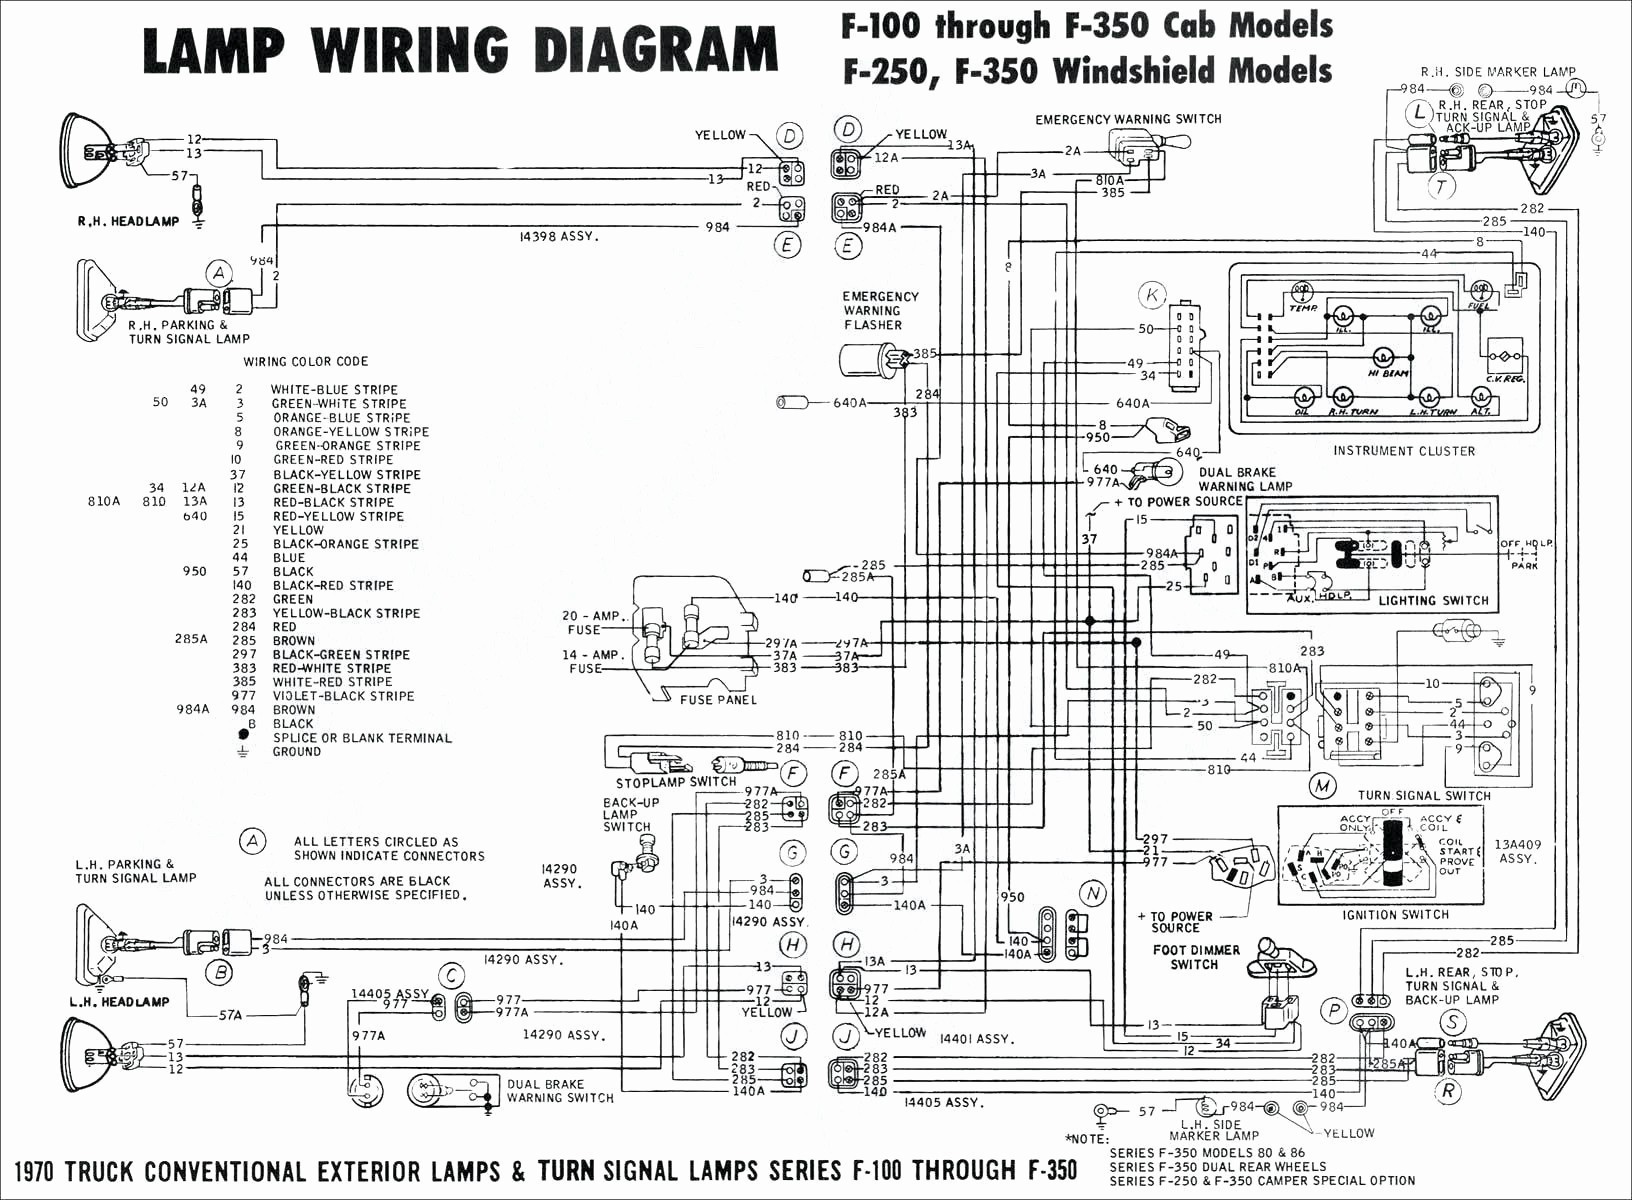 Turn Signal Flasher Wiring Diagram] Basic Turn Signal Ke Wiring Diagram Full Version Hd Of Turn Signal Flasher Wiring